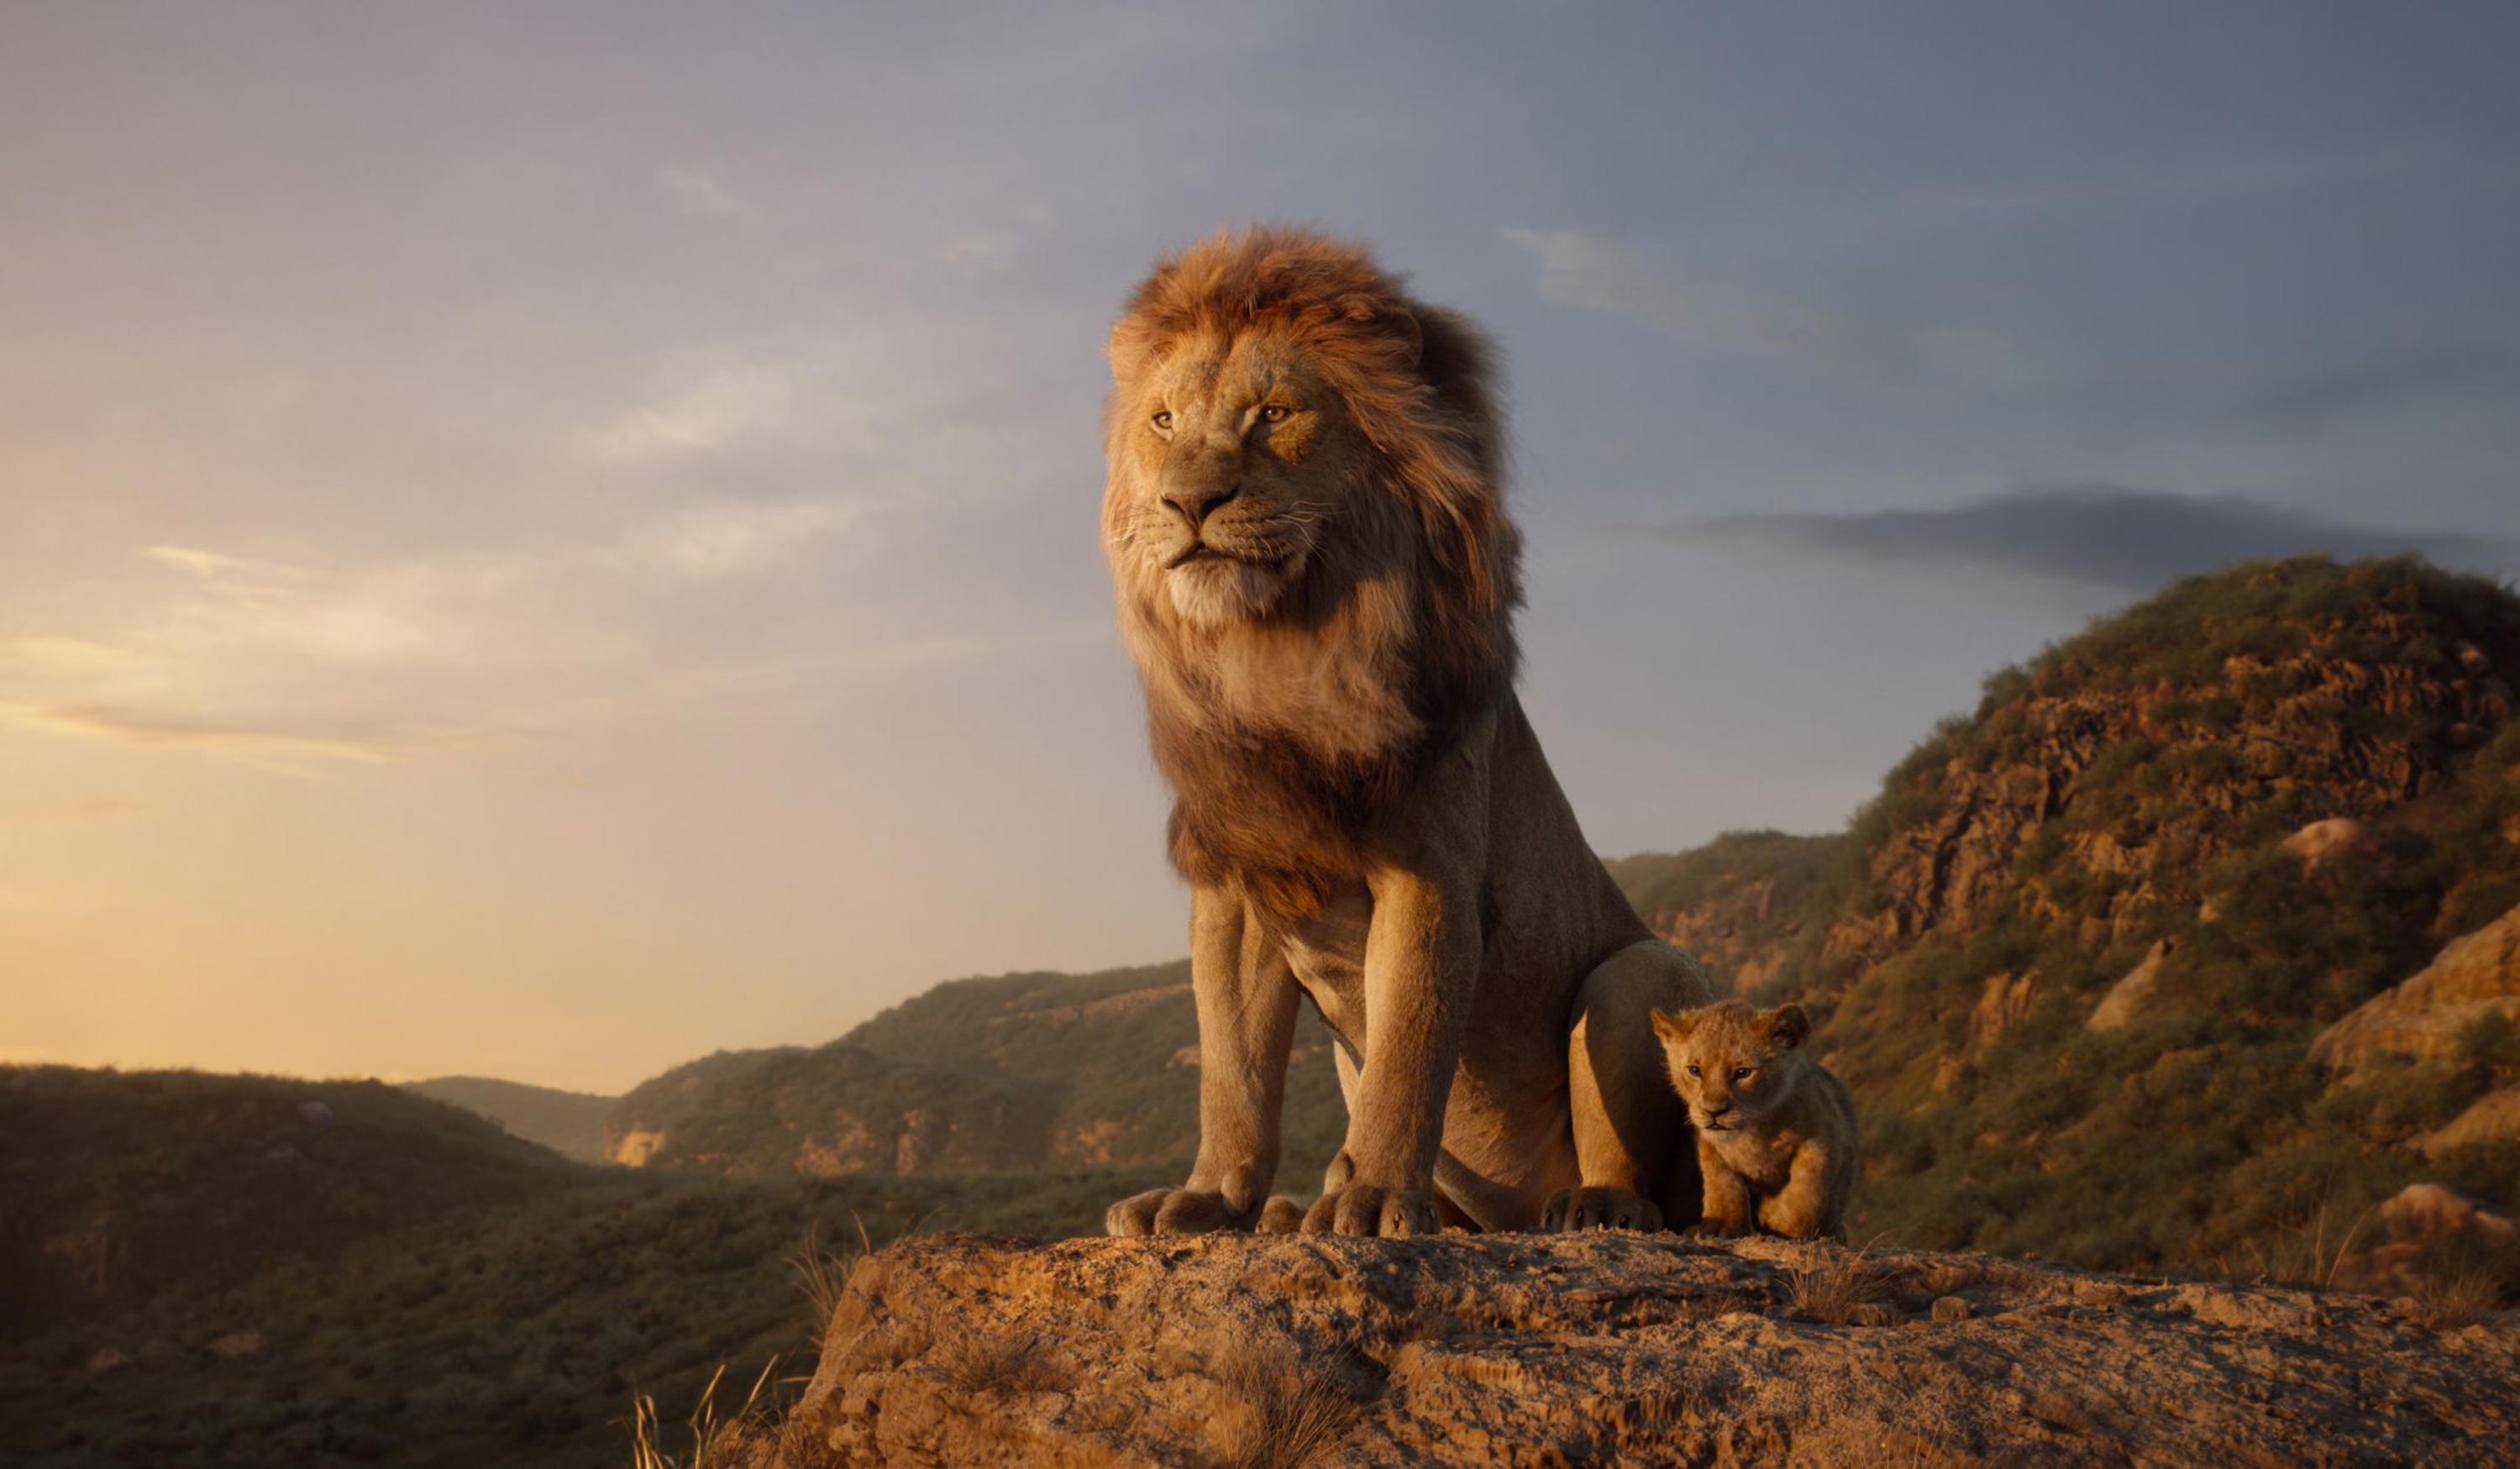 هكذا خيَّب The Lion King أمل الجمهور!